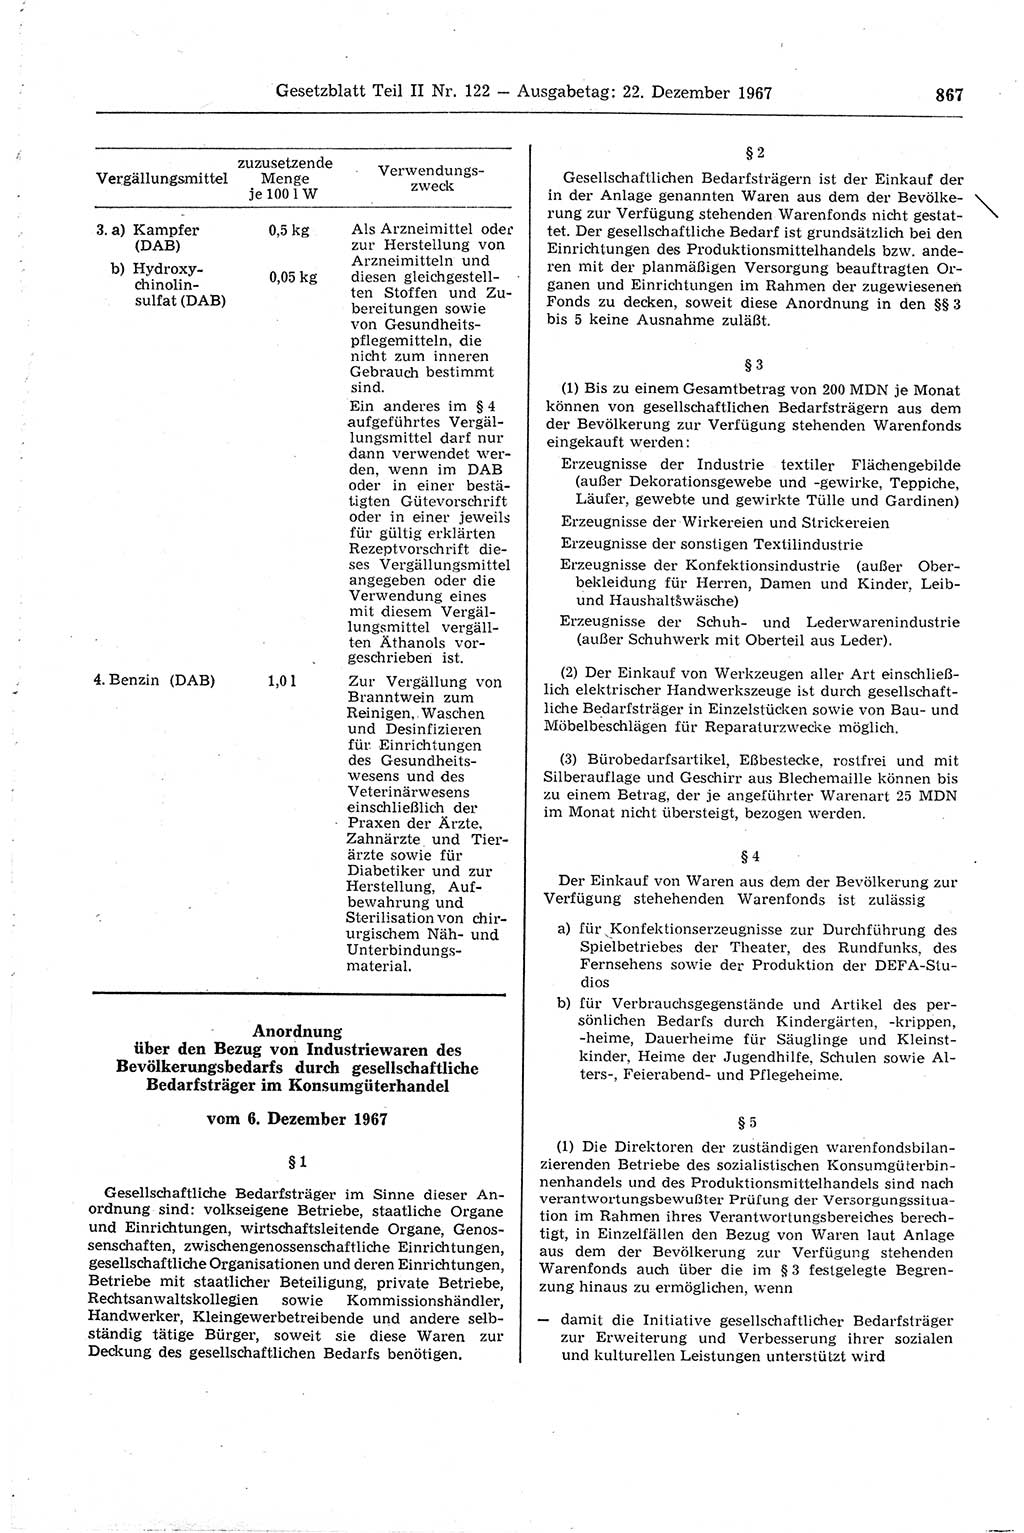 Gesetzblatt (GBl.) der Deutschen Demokratischen Republik (DDR) Teil ⅠⅠ 1967, Seite 867 (GBl. DDR ⅠⅠ 1967, S. 867)